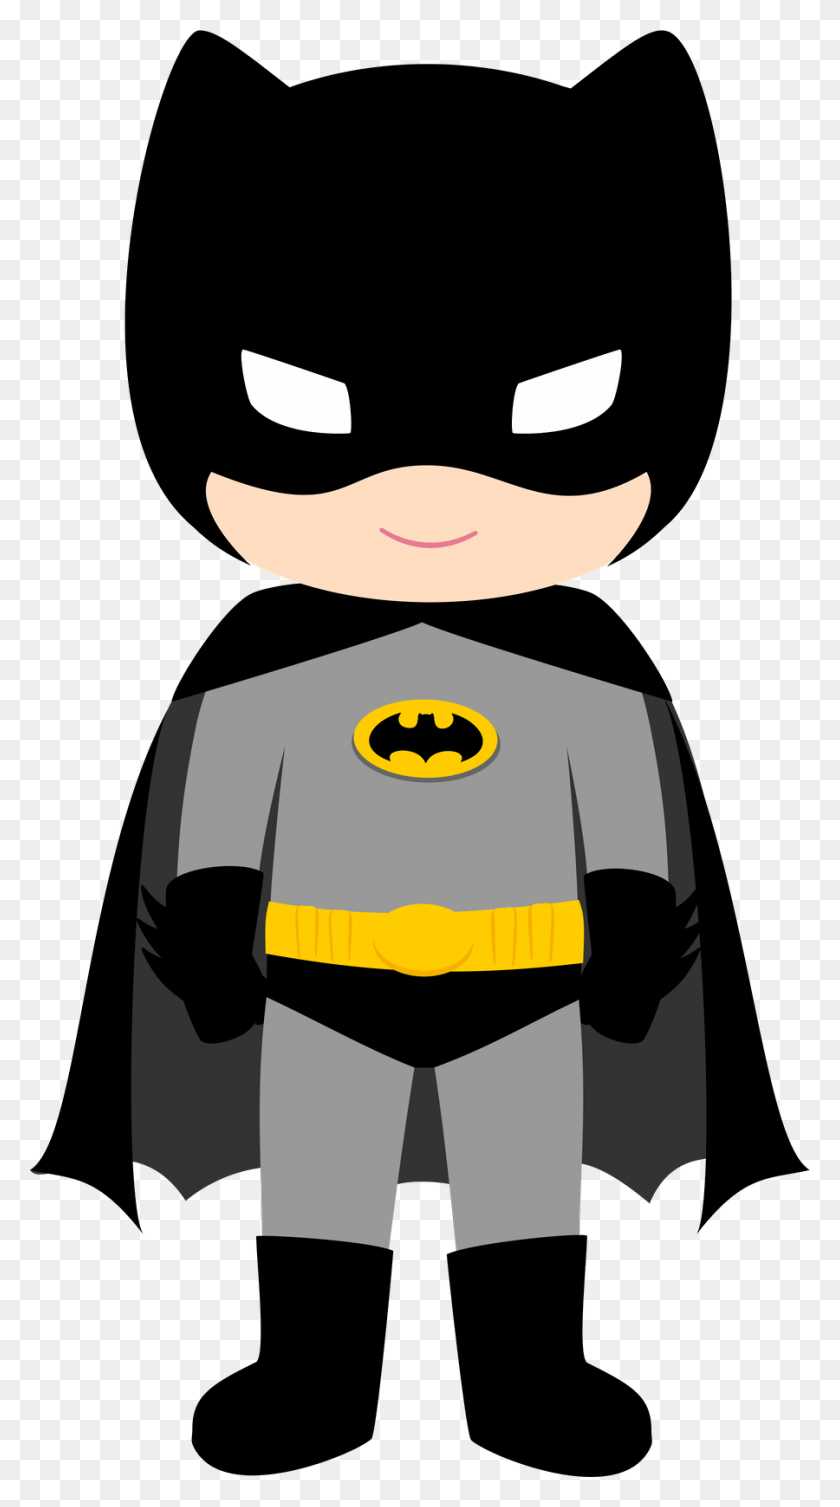 900x1670 Batman Mask Clipart Batman Costume Batman Baby, Batman Logo, Symbol, Pac Man HD PNG Download